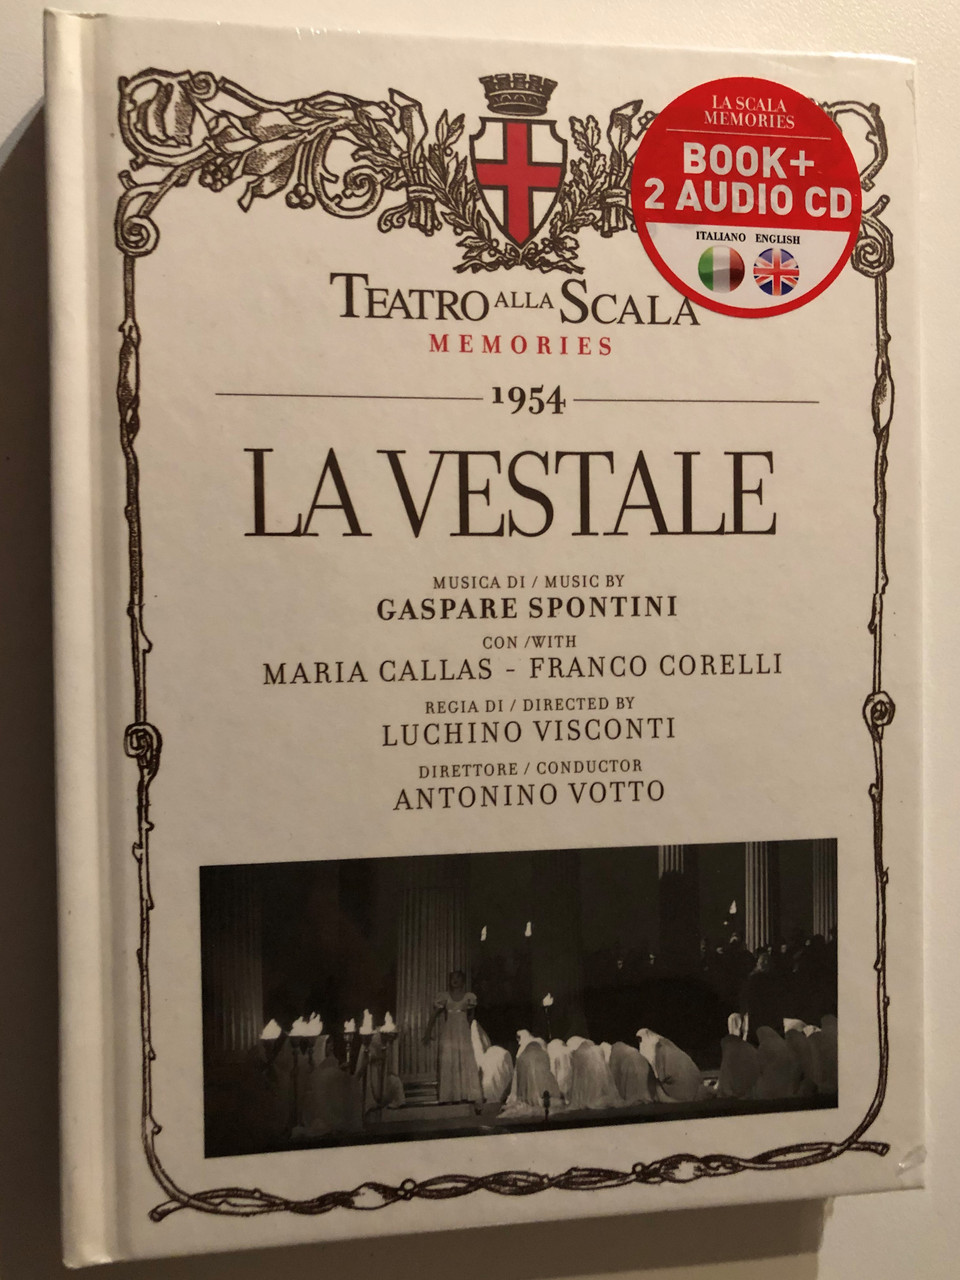 Bible　My　2012　Callas,　in　Votto　Conductor:　alla　(Book+2　Teatra　Spontini　Directed　Antonio　Gaspare　CD　Luchino　Franco　by　Corelli　La　Vestale　Maria　CD)　1954　Language　Visconti　Scala